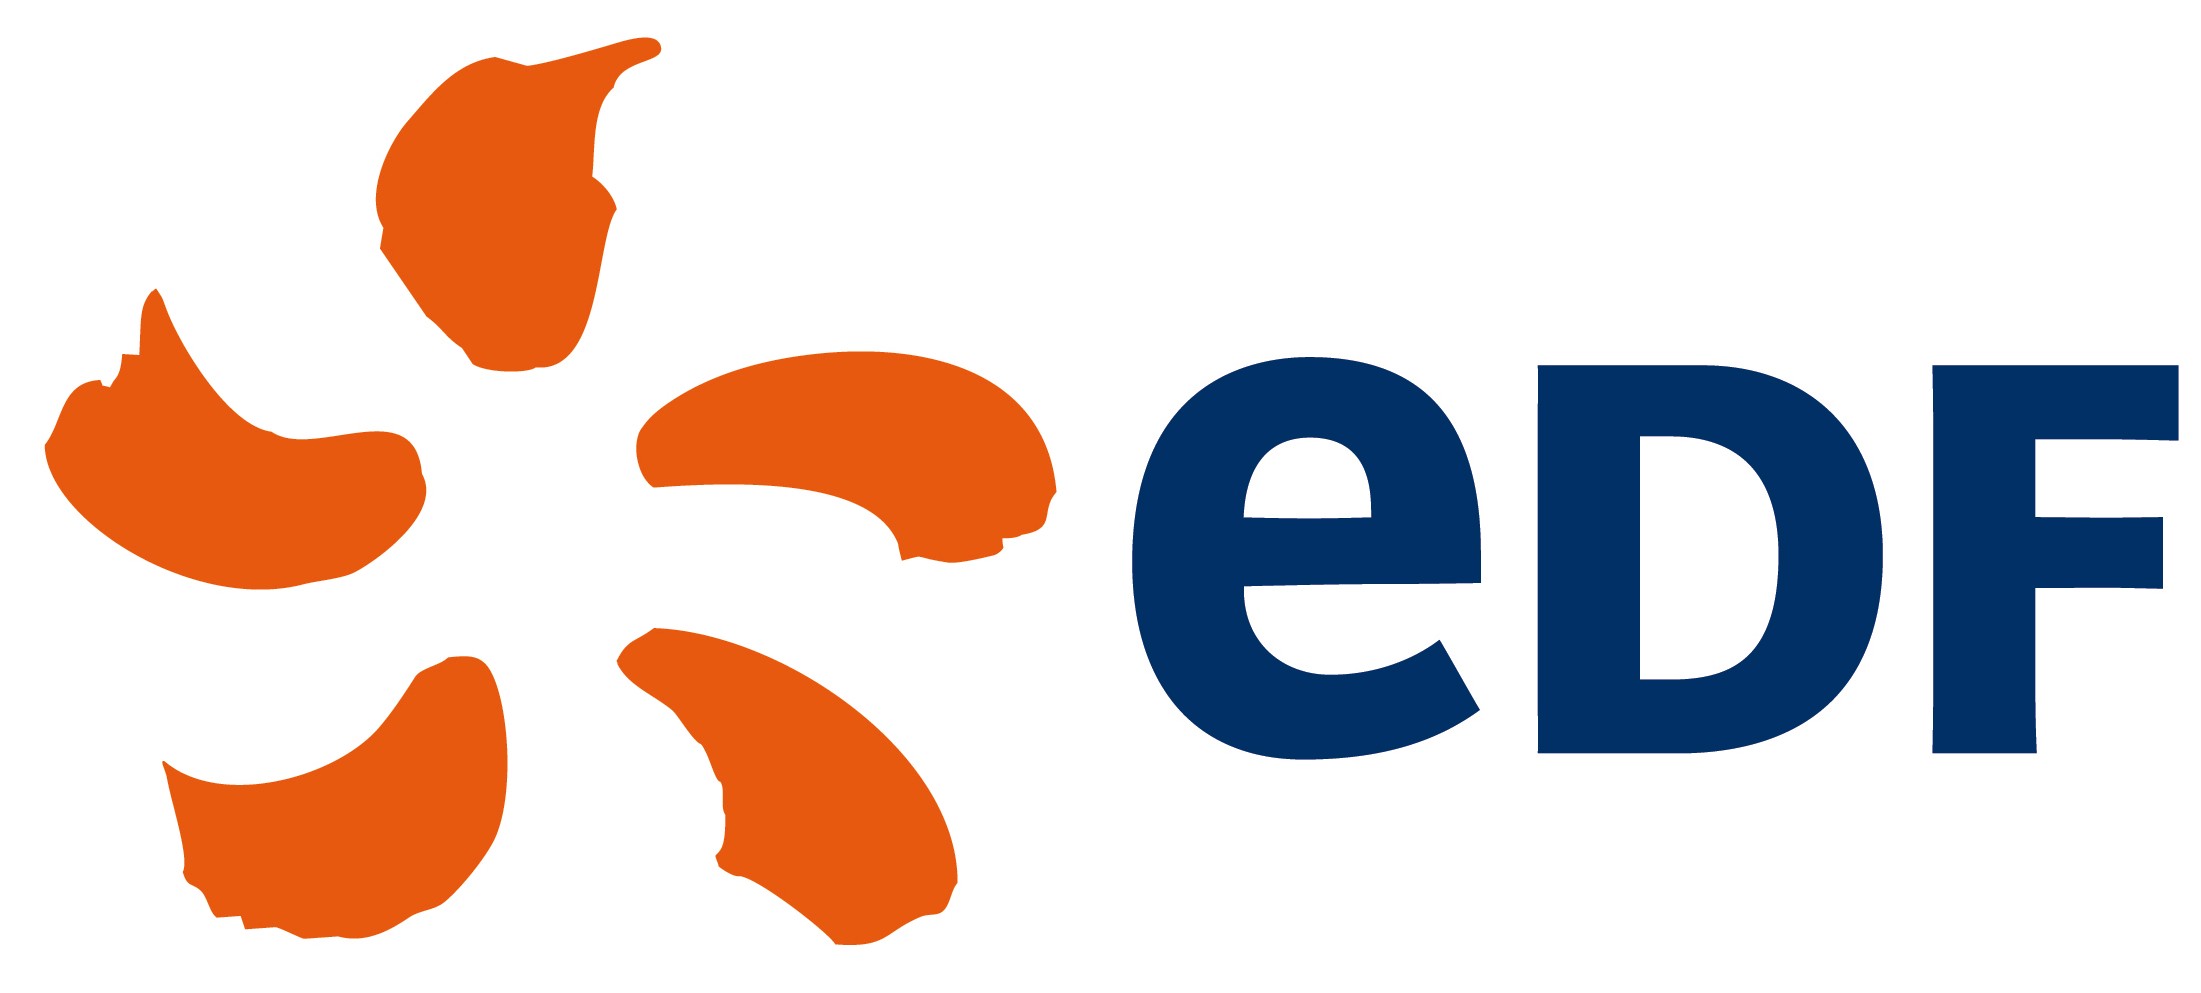 Electricité de France (EDF) logo